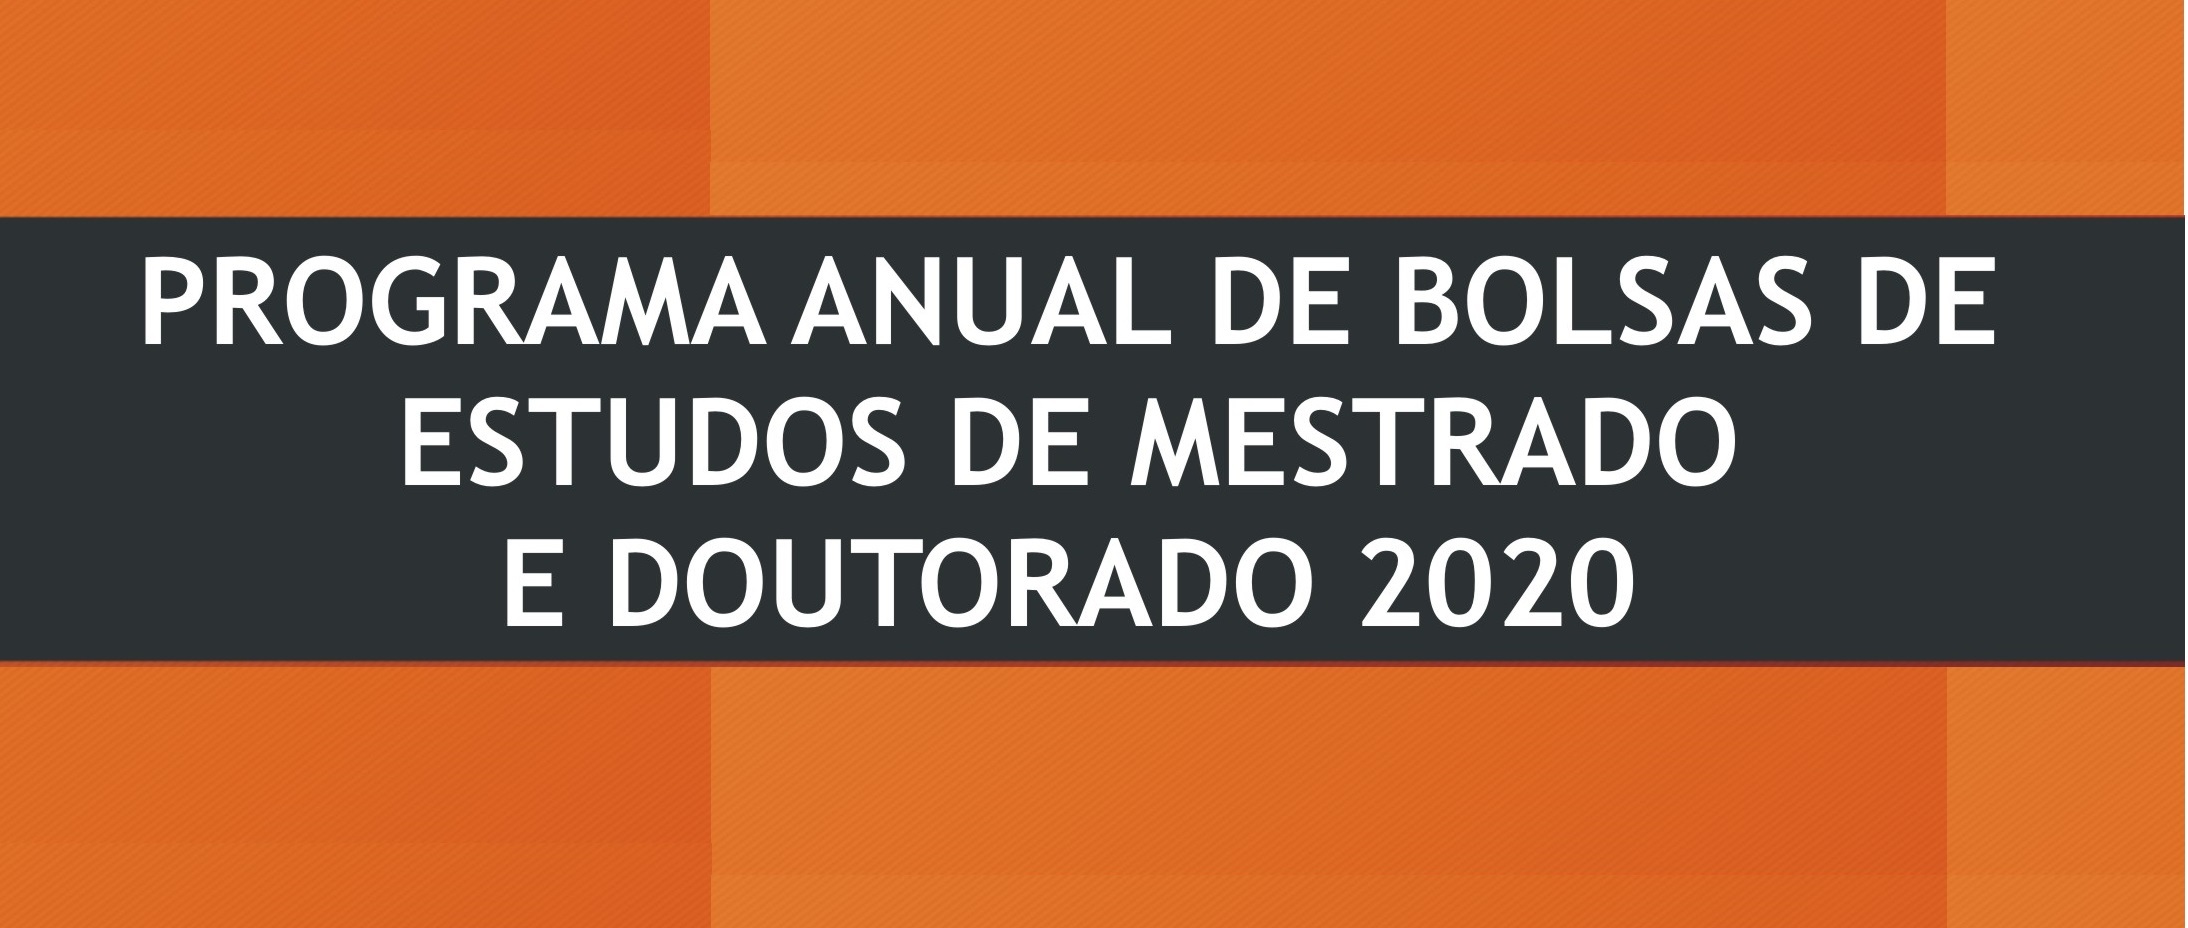 RESULTADO DO PROGRAMA ANUAL DE BOLSAS DE ESTUDOS DE MESTRADO E DOUTORADO - 2020